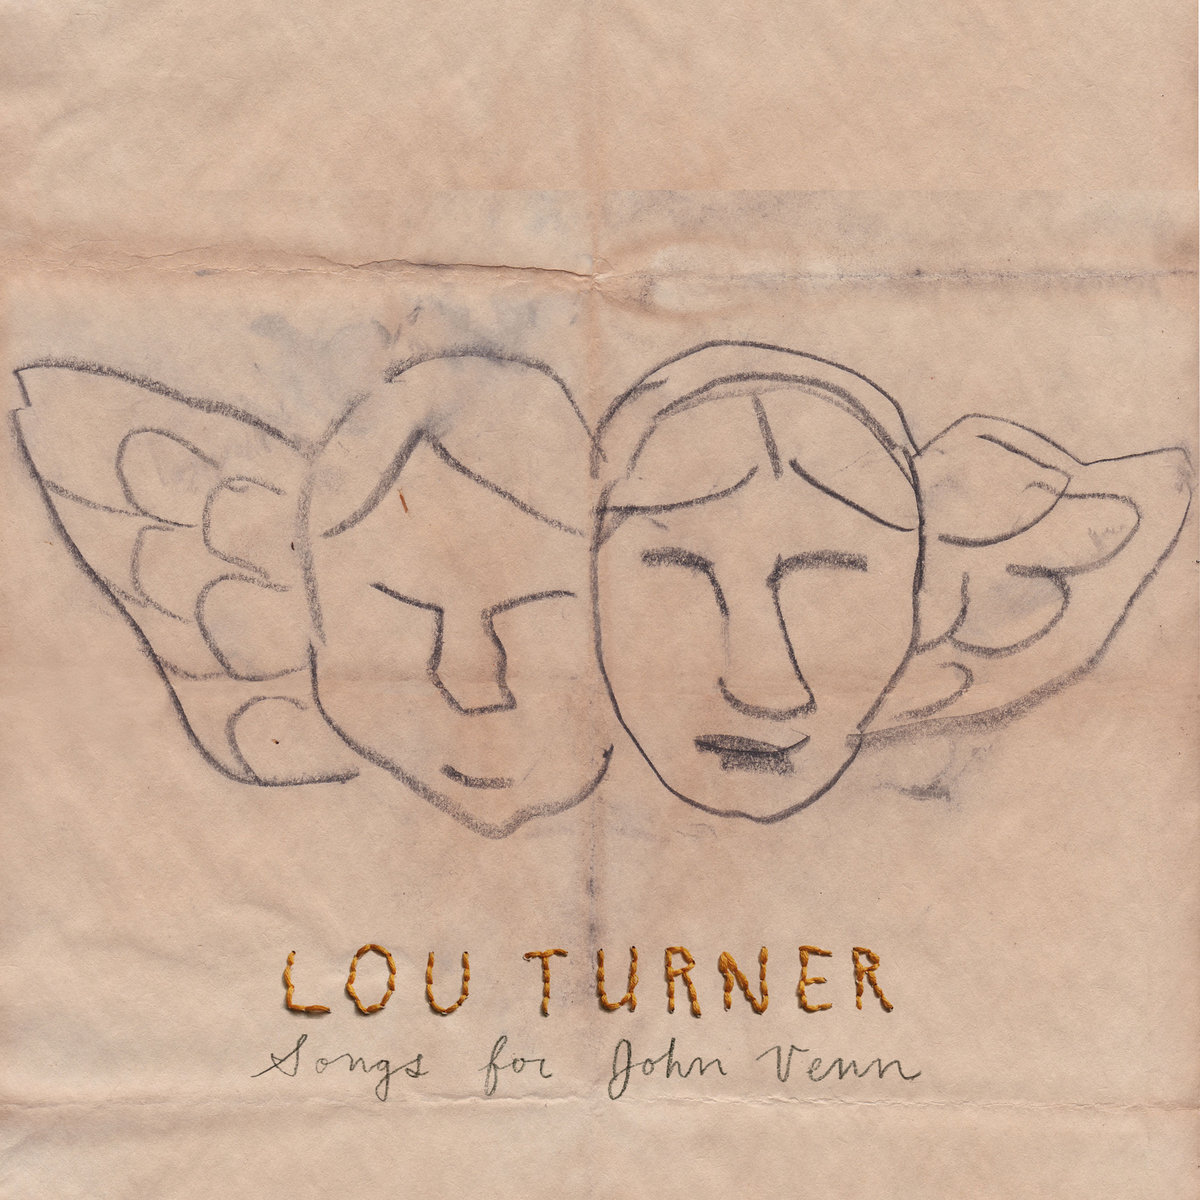 Lou Turner - Songs for John Venn